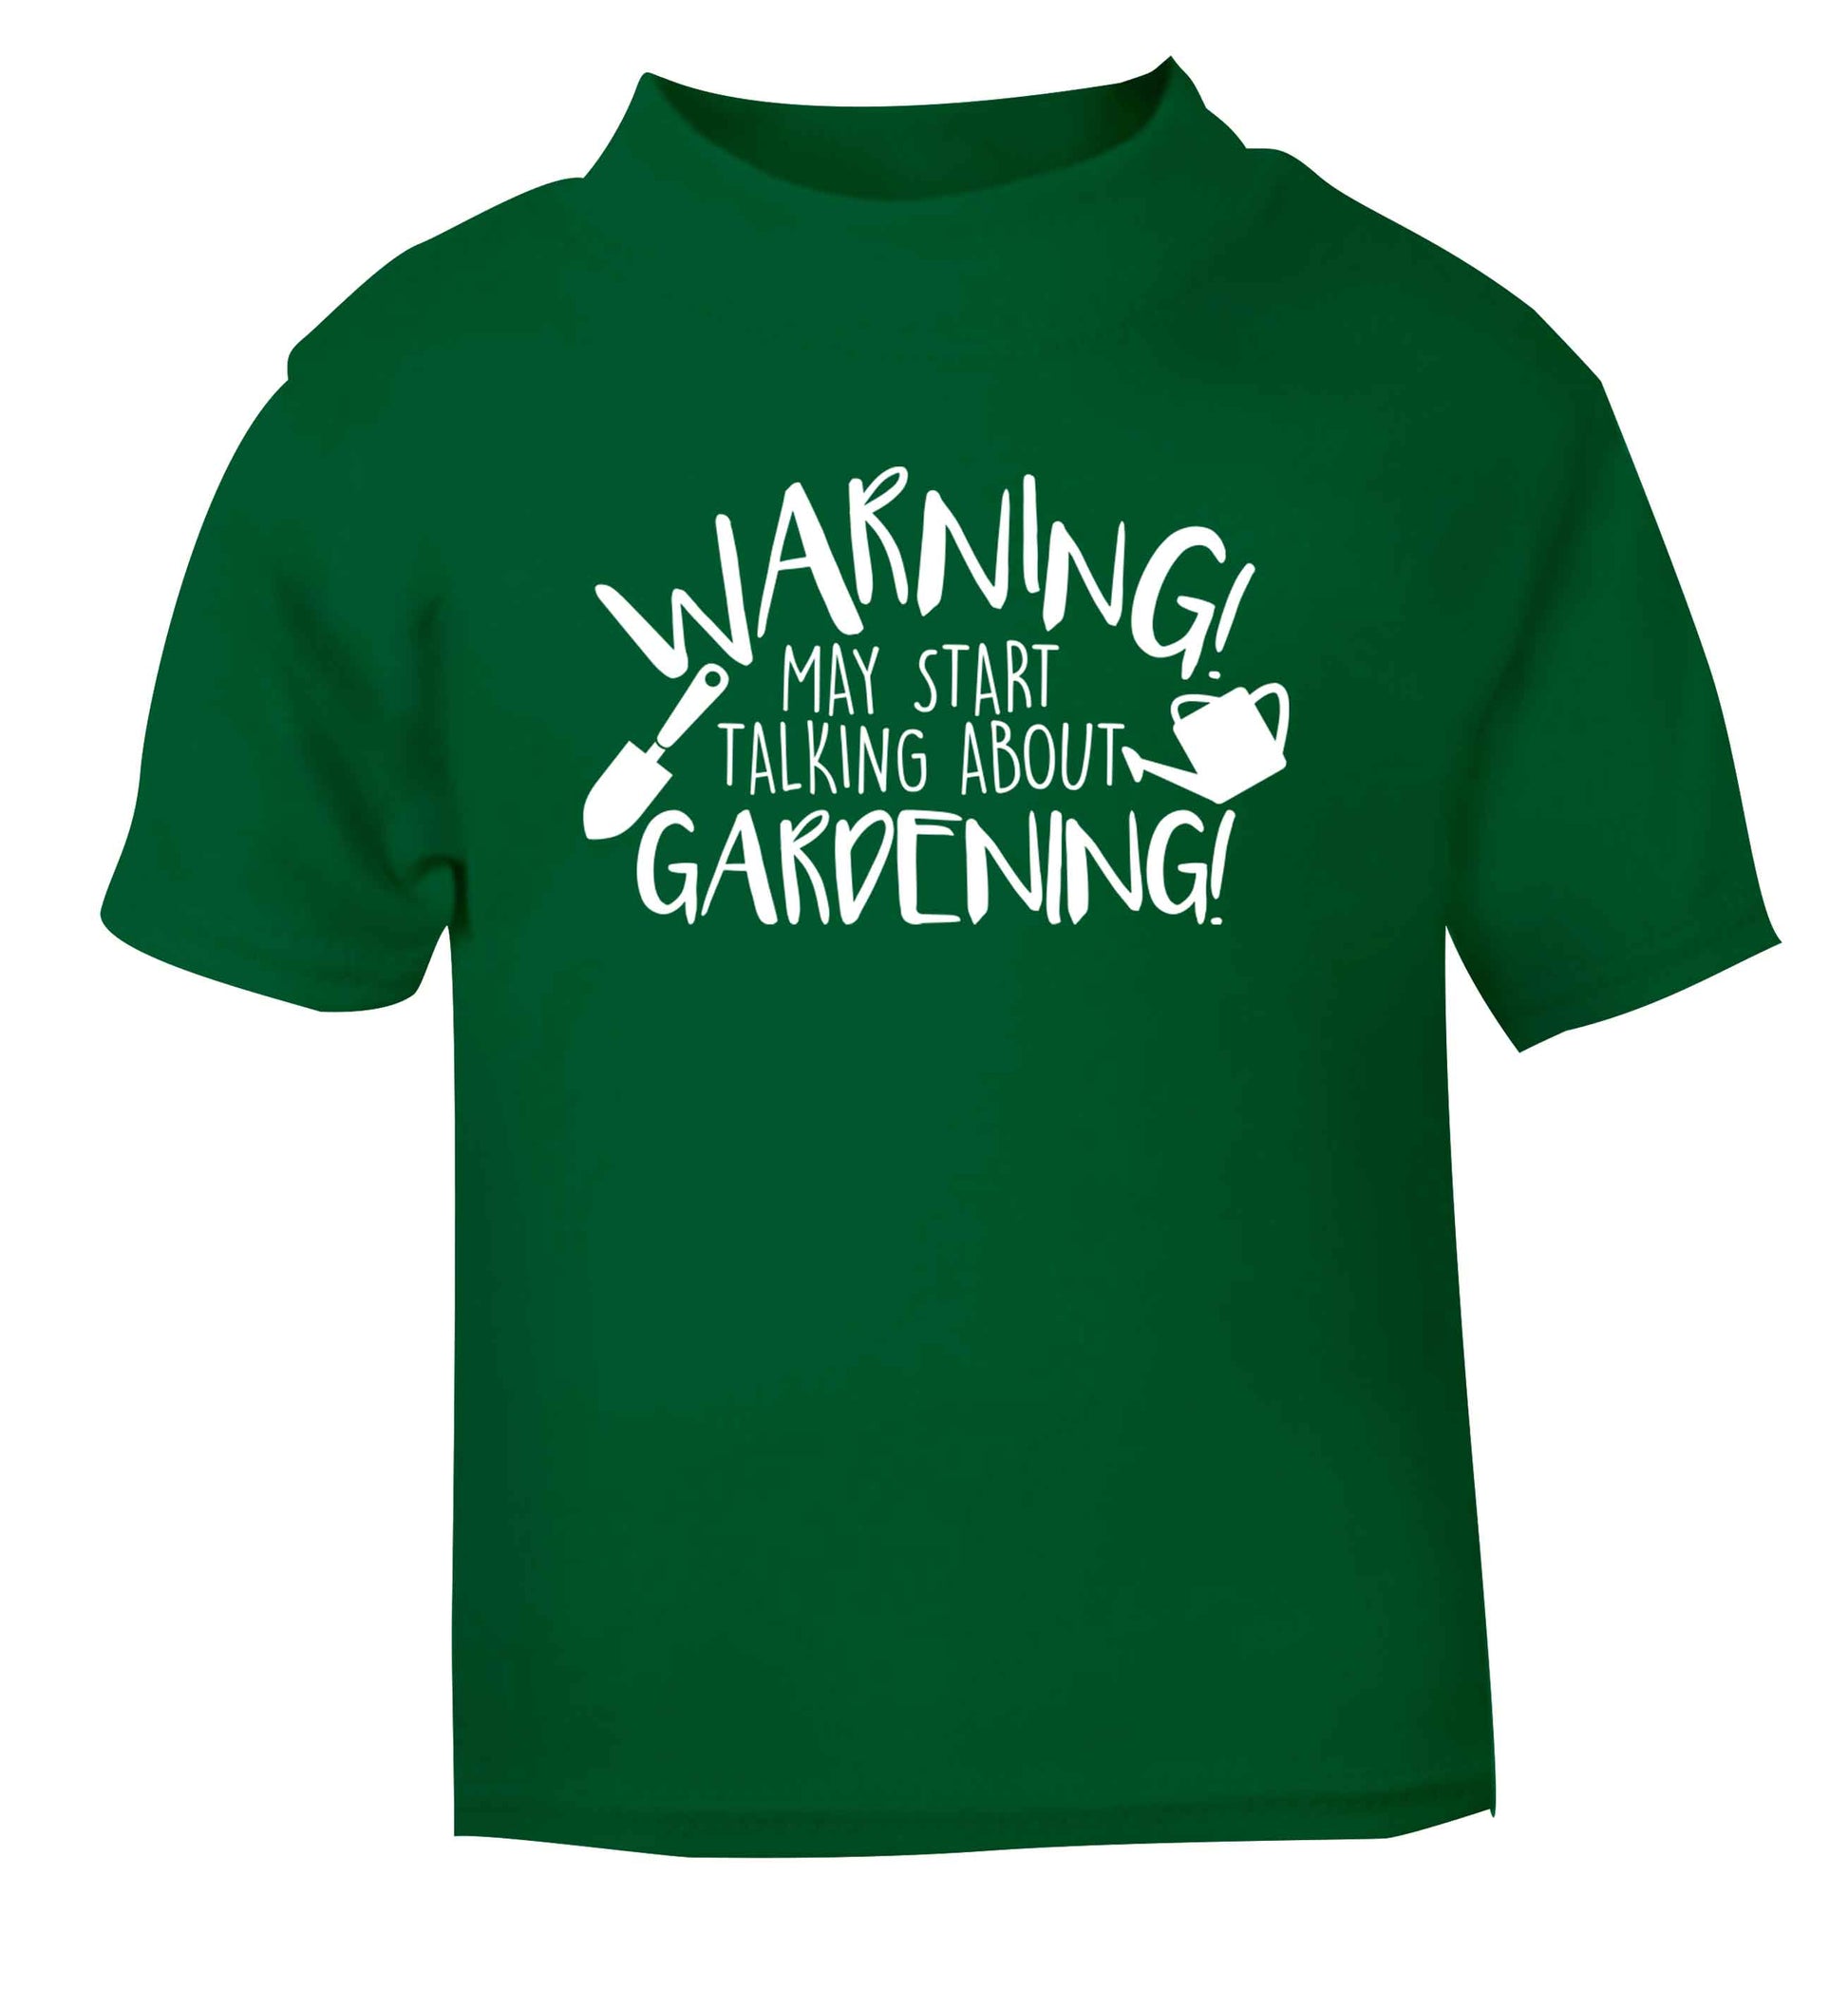 Warning may start talking about gardening green Baby Toddler Tshirt 2 Years